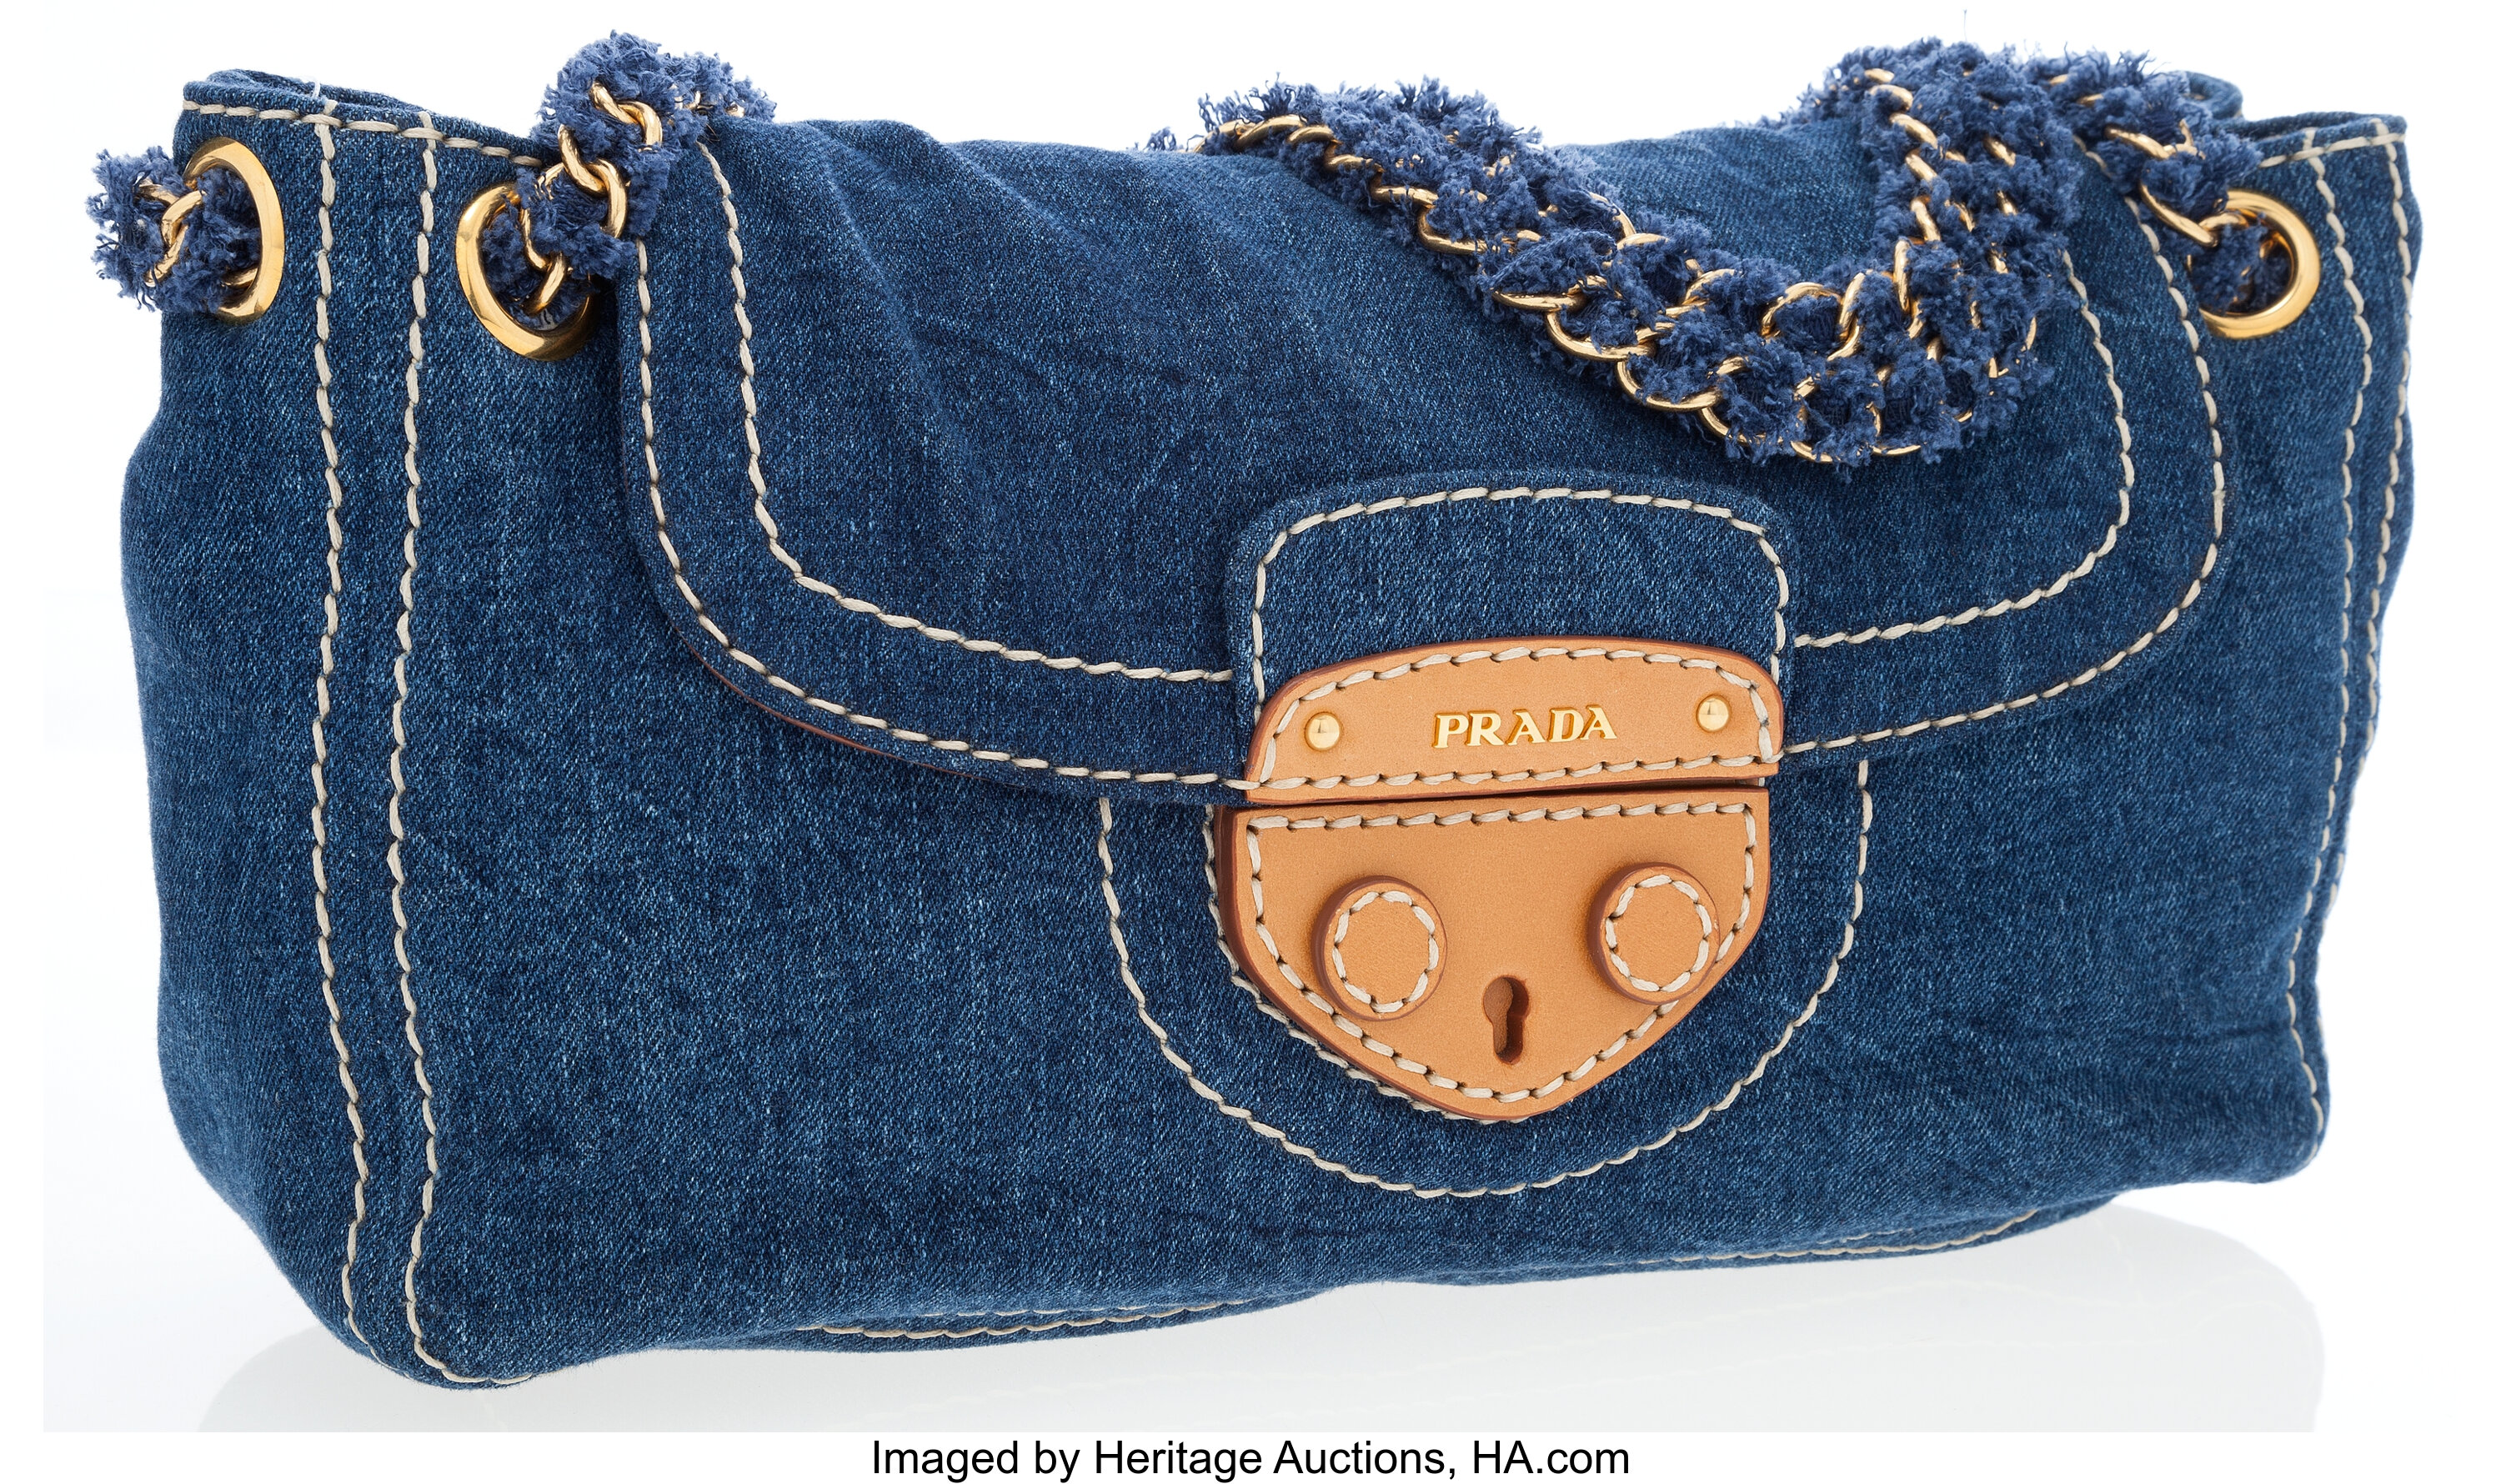 Prada Jeans Ring Shoulder Bag - ShopStyle